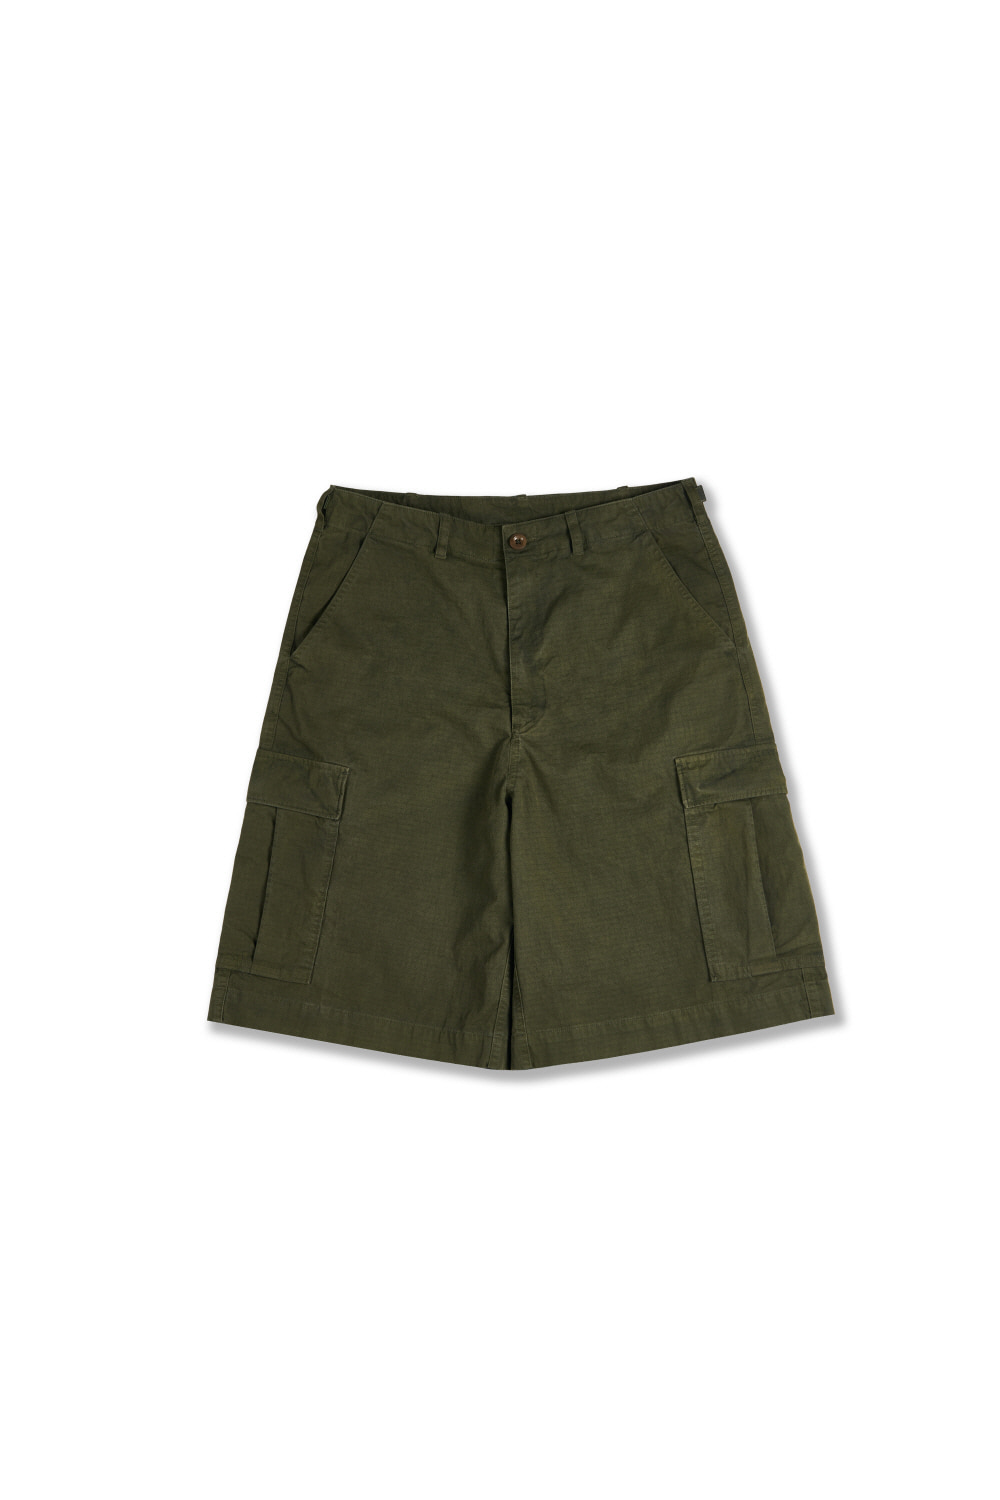 cargo shorts_olive drab